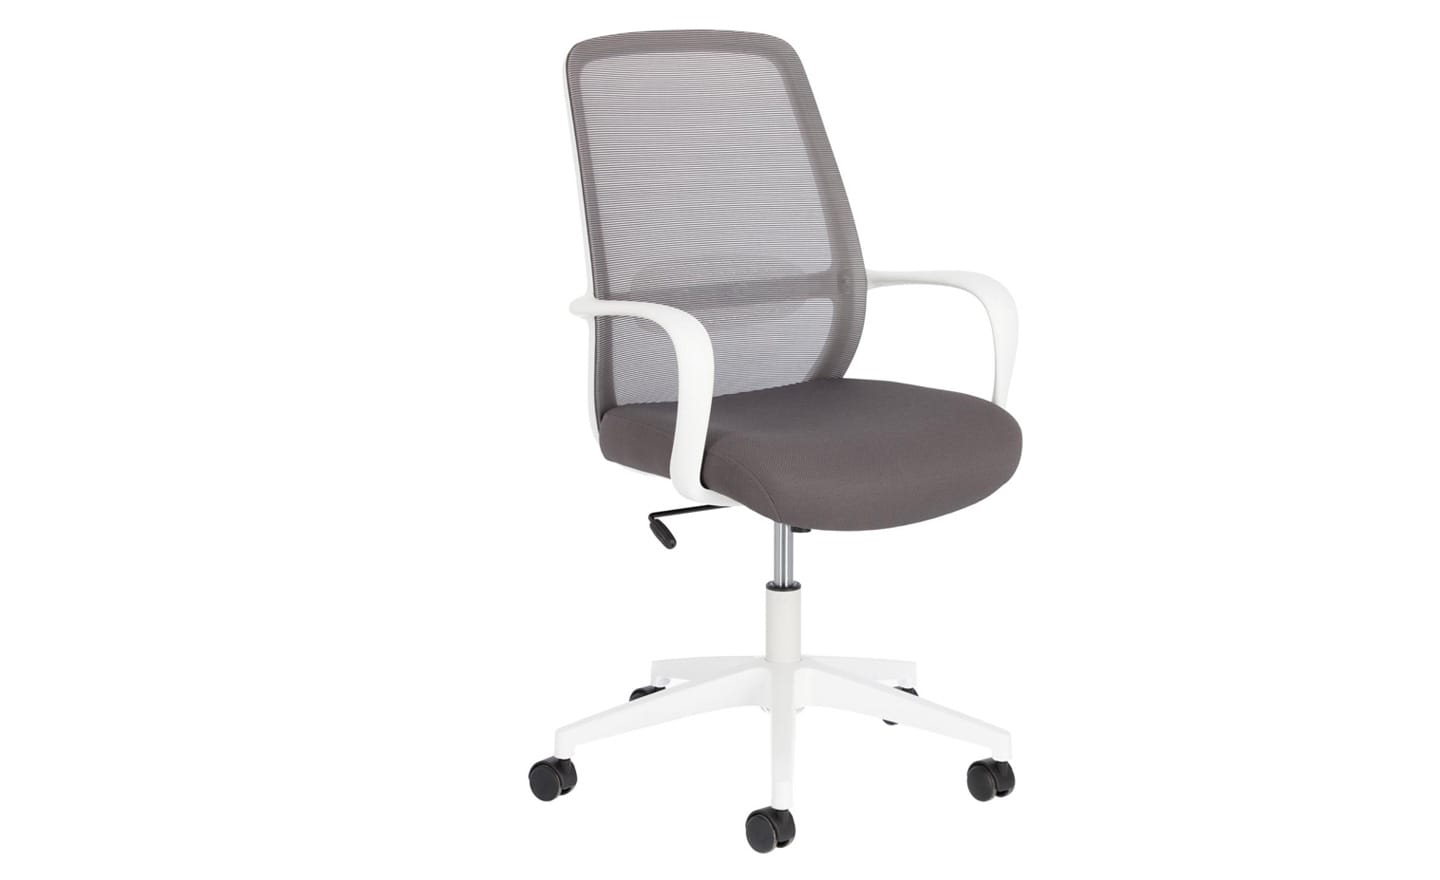 Cadeira de Escritório Melva Cinza - CC5189J03. Design elegante com assento giratório e altura ajustável. Ideal para tornar o seu escritório em casa mais confortável e produtivo. Moveistore